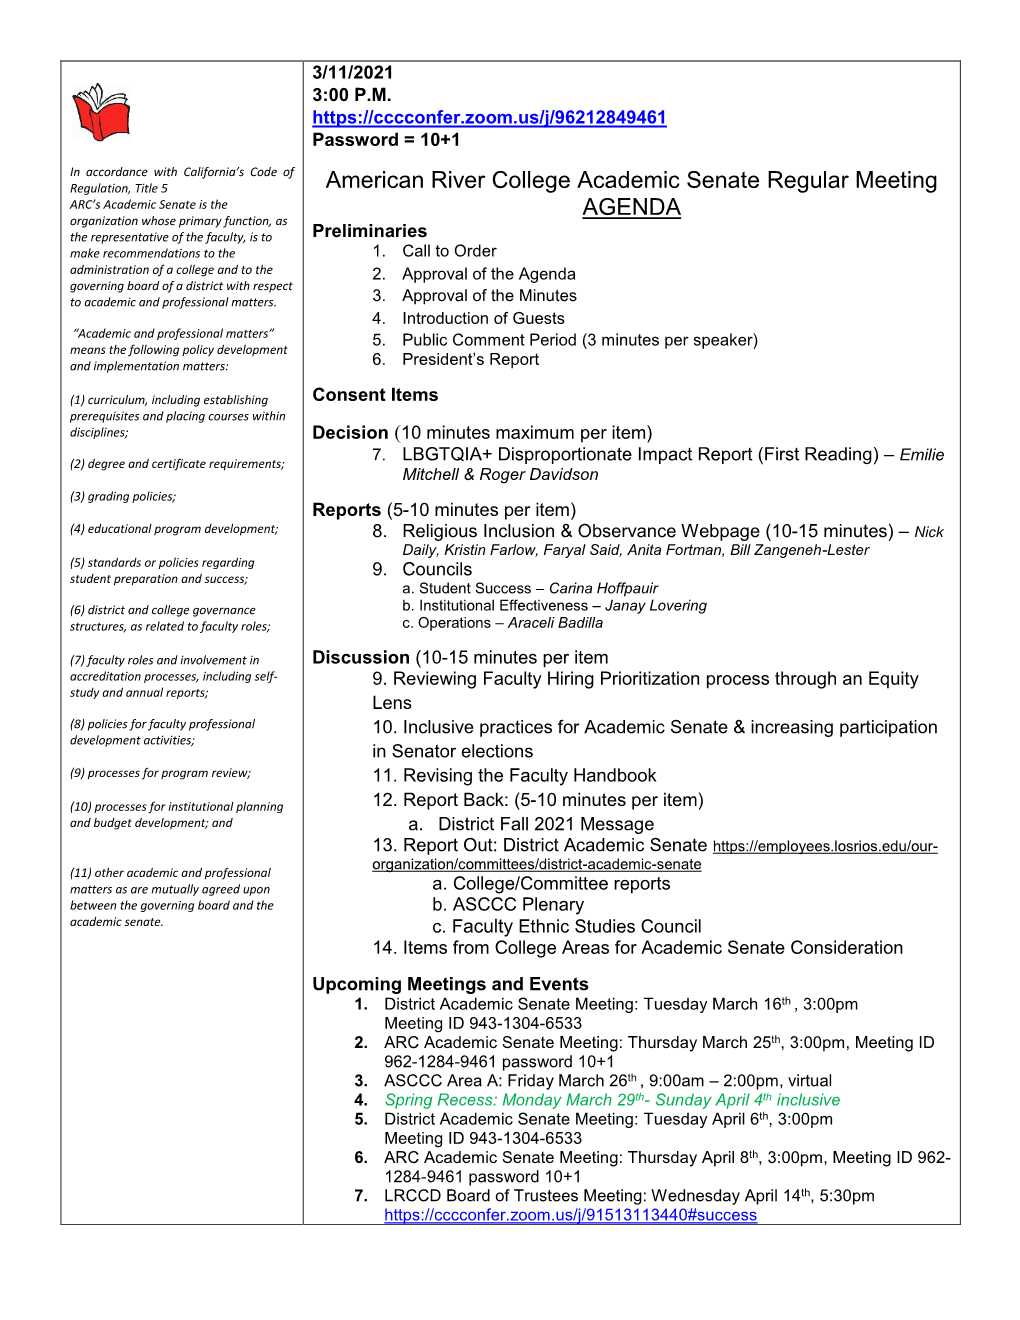 American River College Academic Senate Regular Meeting AGENDA